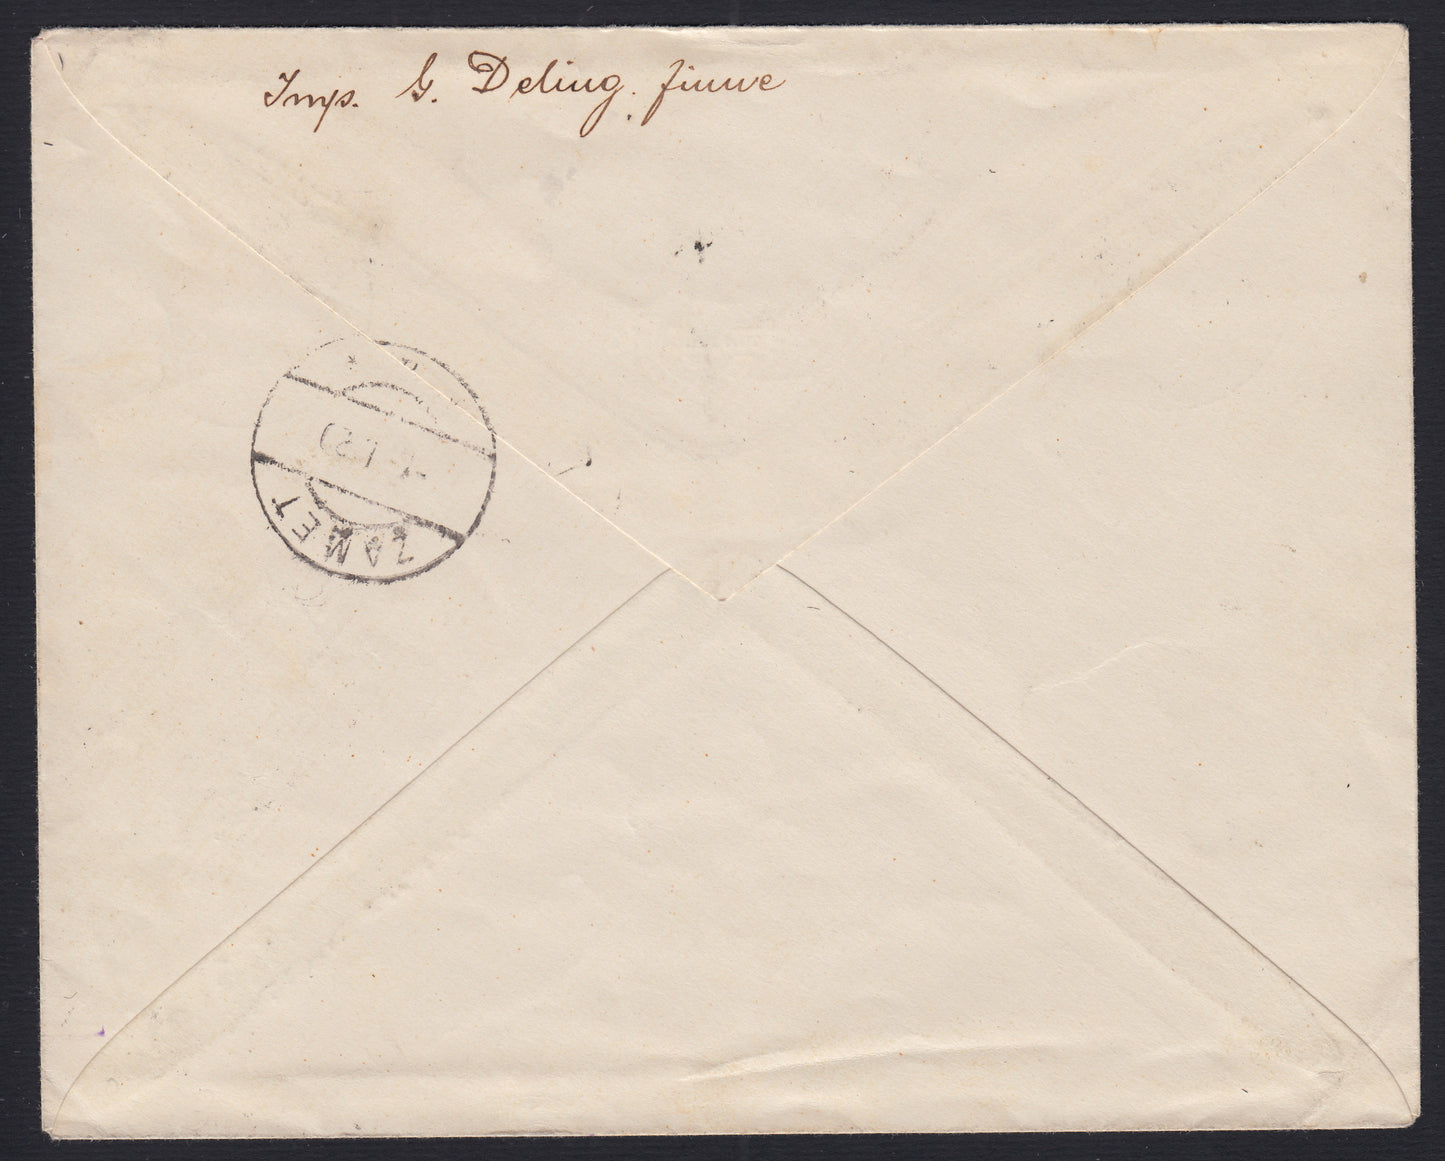 266 - 1920 - Carta enviada desde Fiume a Zamat el 1/4/1920 franqueada con 55 sobre 1 cor. + 55 en 3 cor. + 55 en 10 cor. Posta Fiume, el primero tiene una sobreimpresión oblicua (C83aaa + C85 + D87).